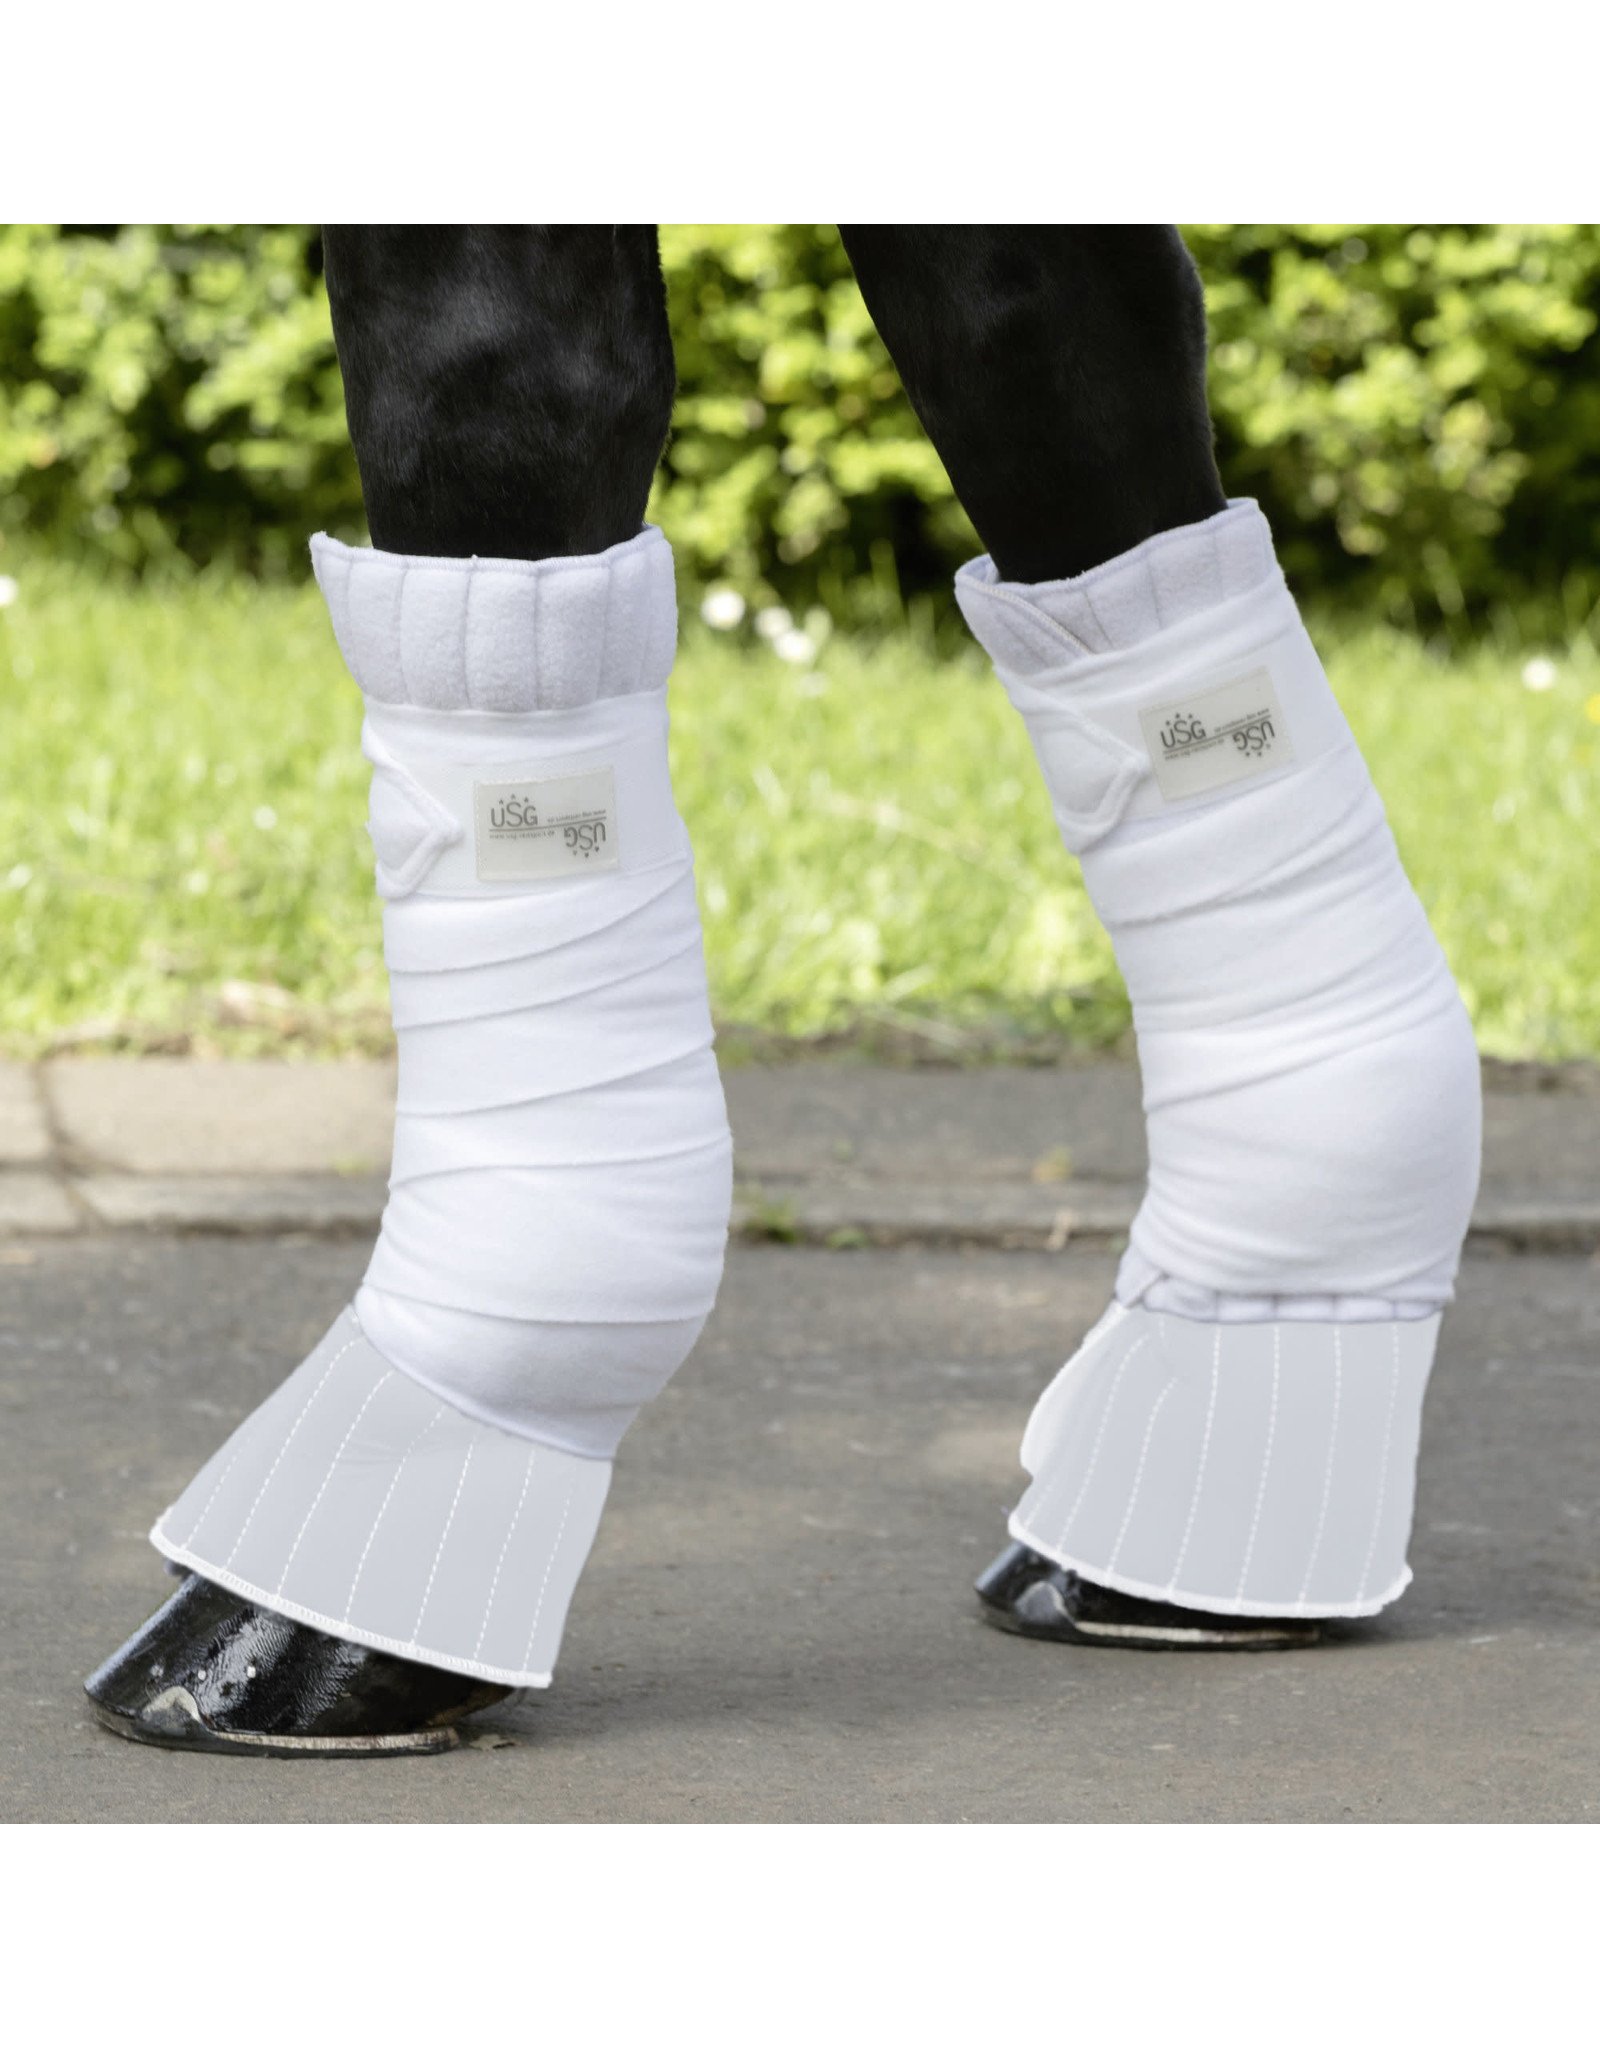 USG Coronet Protection Leg Pads